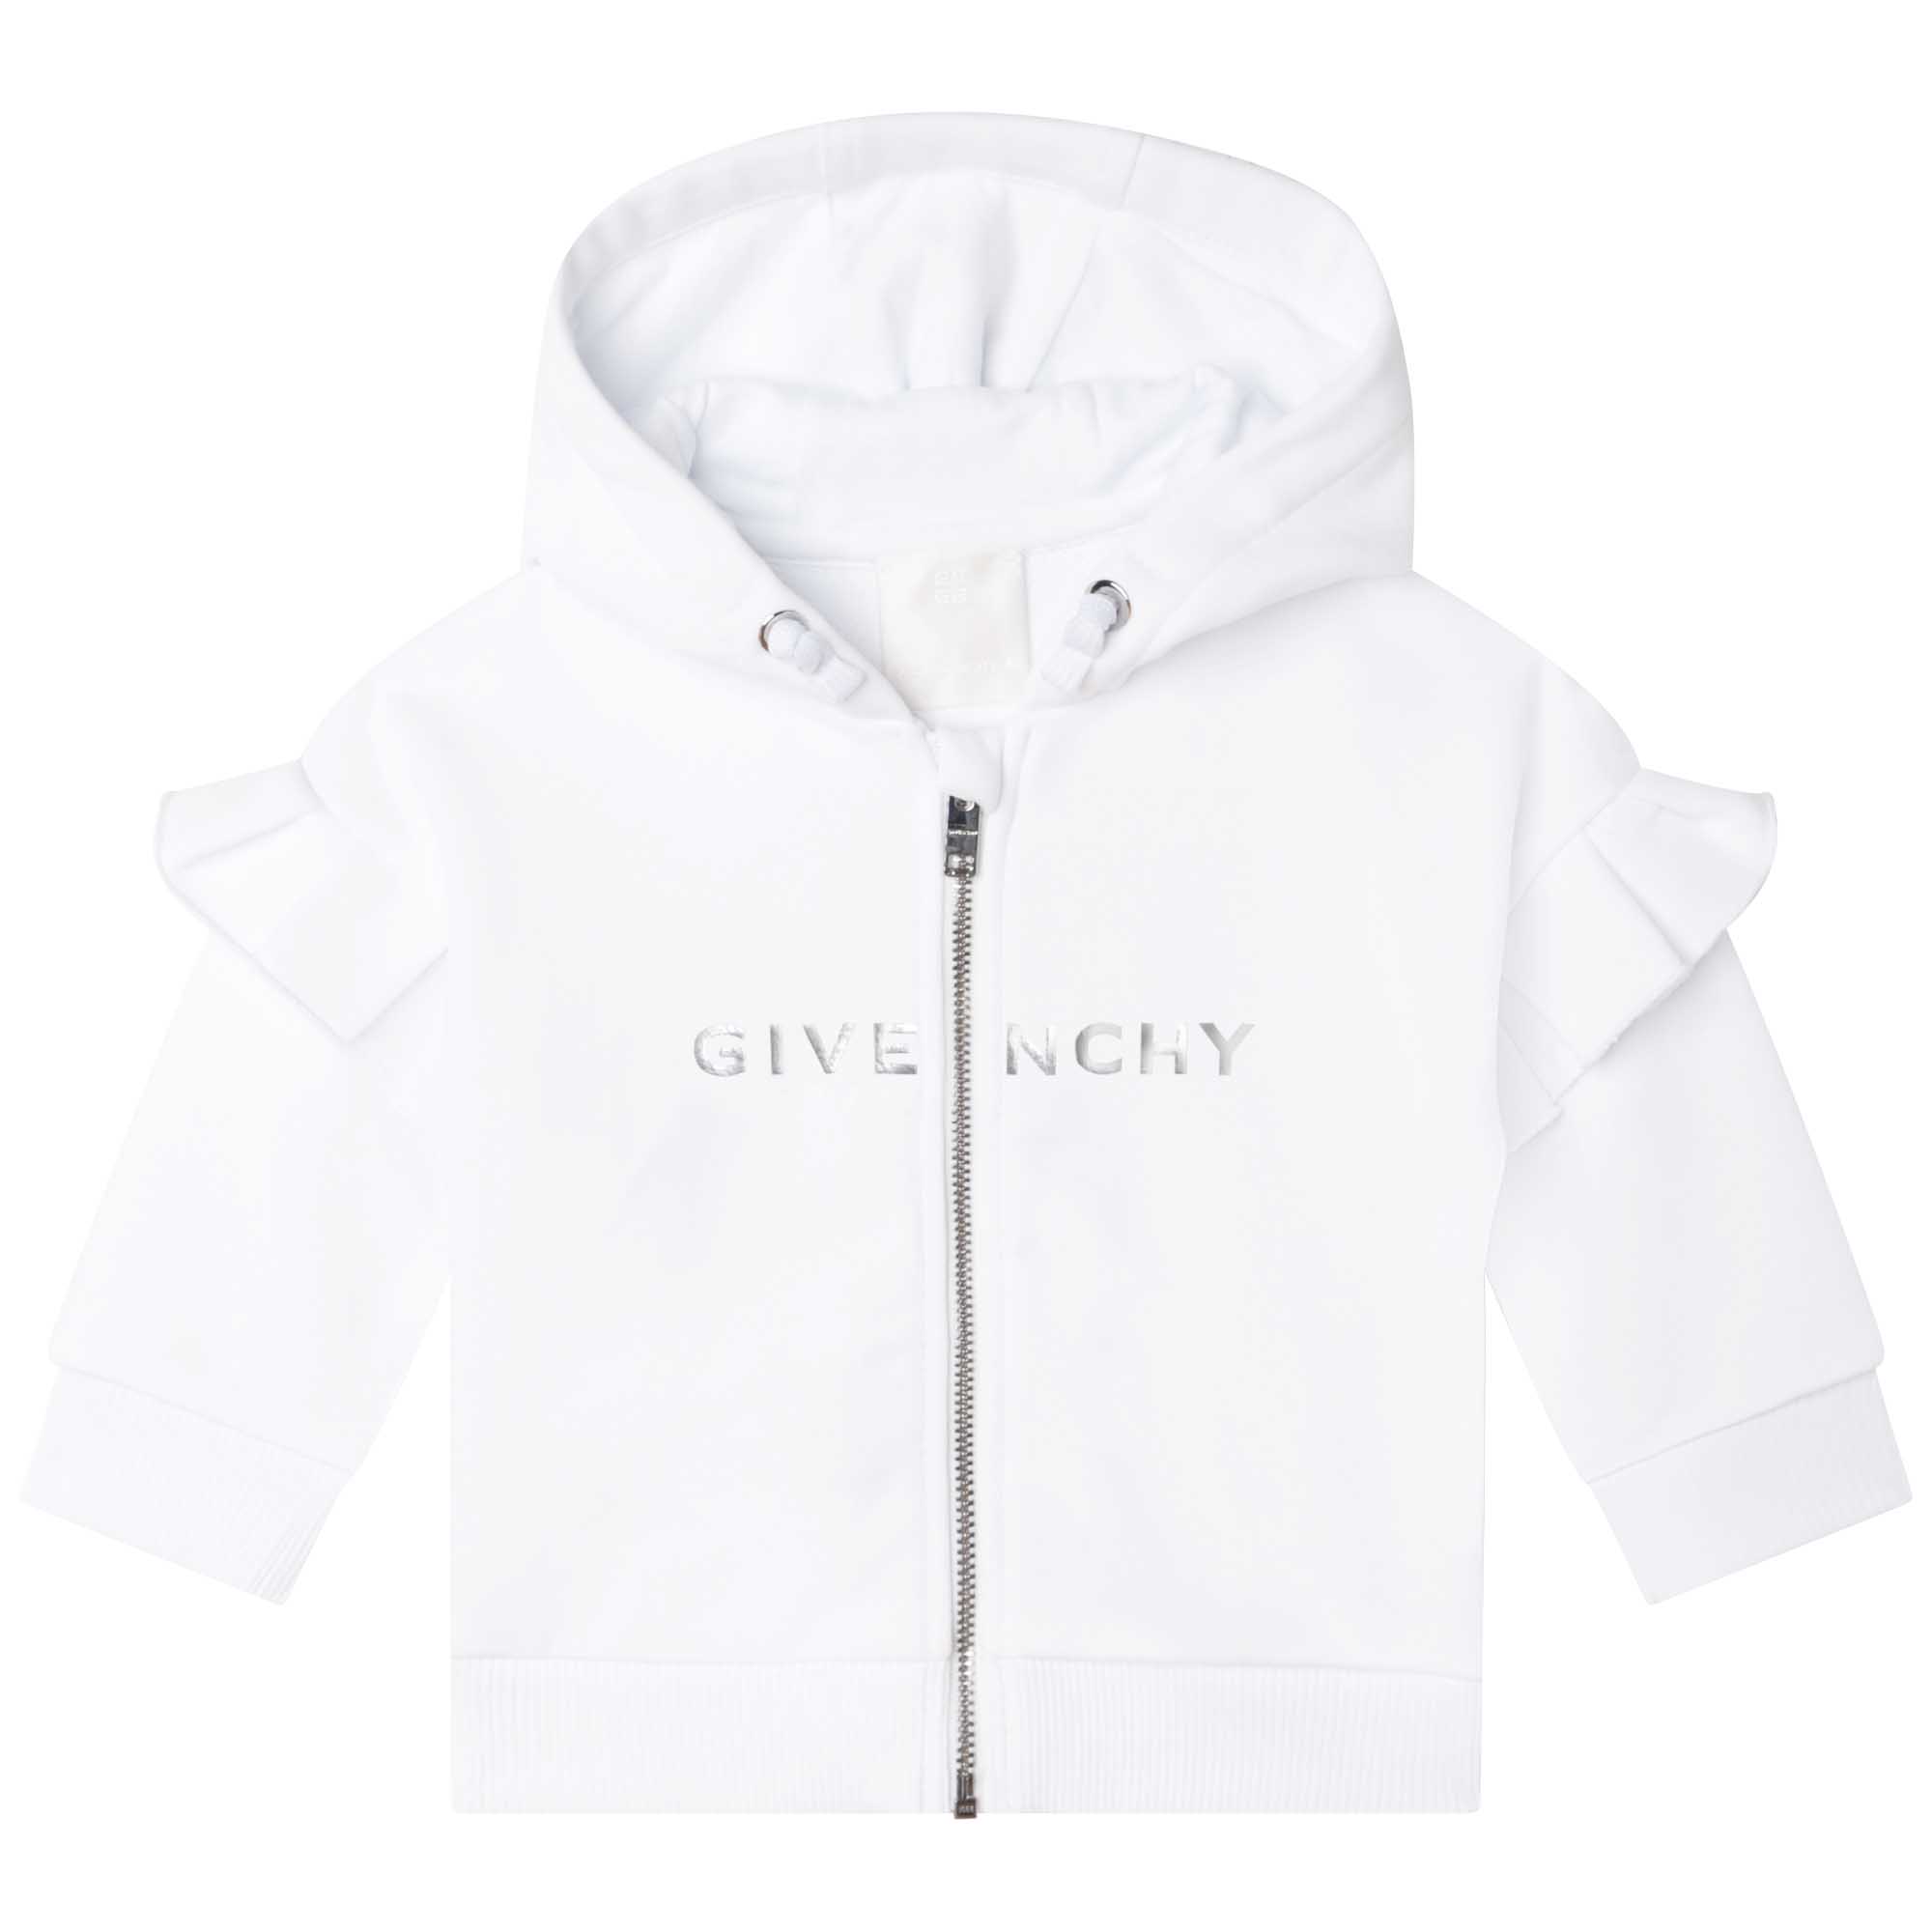 Fleece zip-up sweatshirt GIVENCHY for GIRL